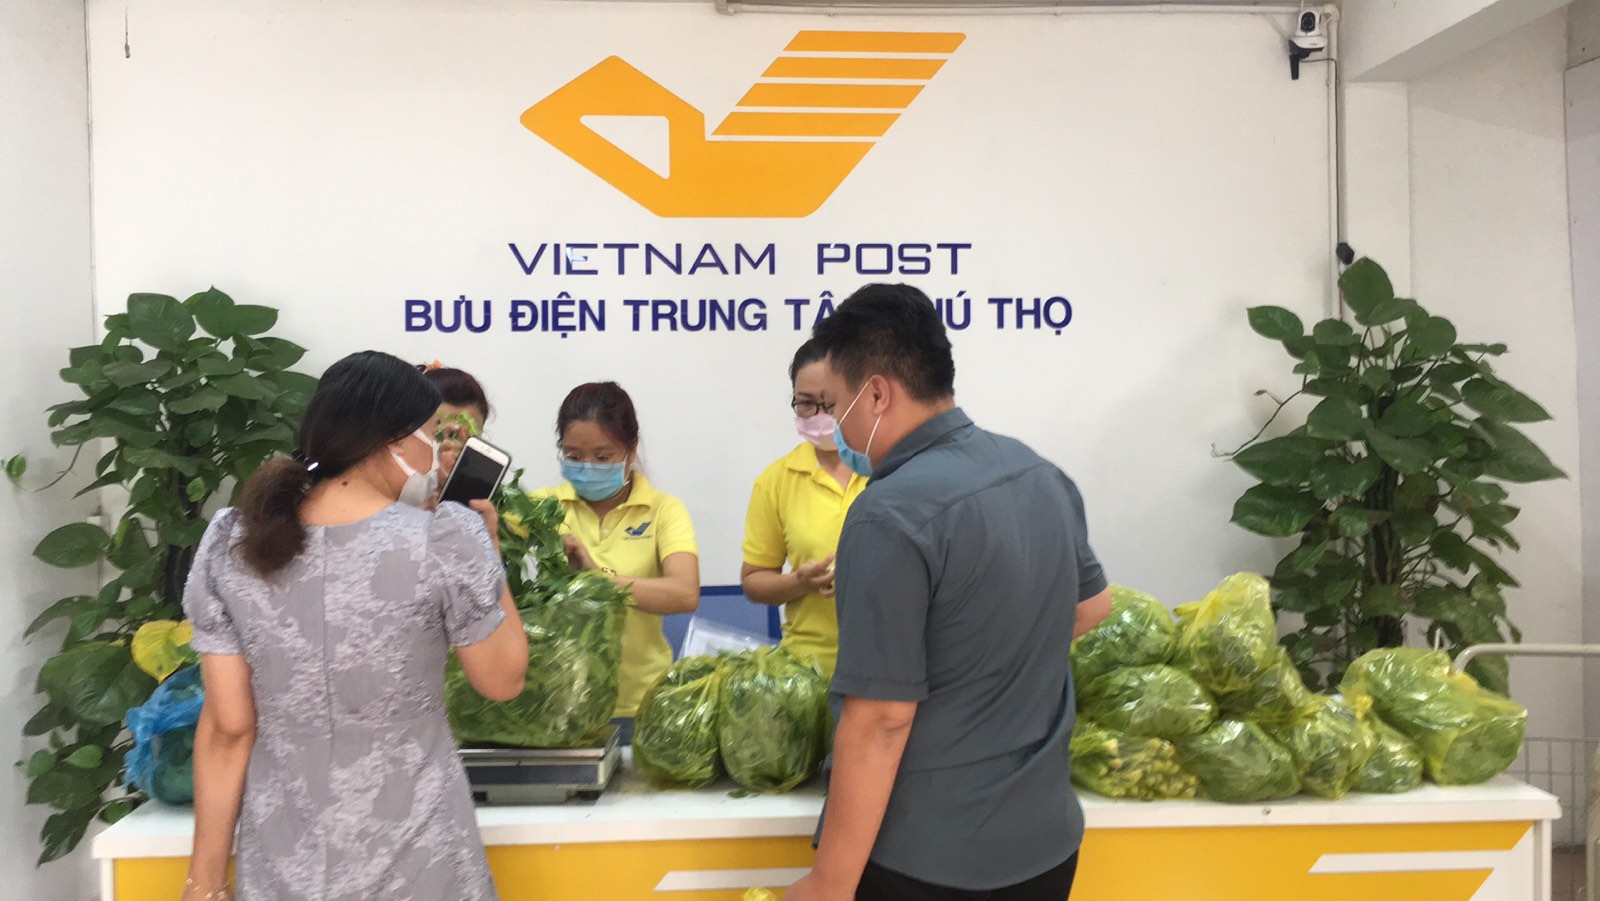 Sau 3 ngày triển khai, 179 điểm bán hàng bình ổn giá của Bưu điện Thành phố Hồ Chí Minh tại các quận, huyện đã trở thành địa chỉ mua hàng hóa, lương thực, thực phẩm quen thuộc của người dân thành phố.